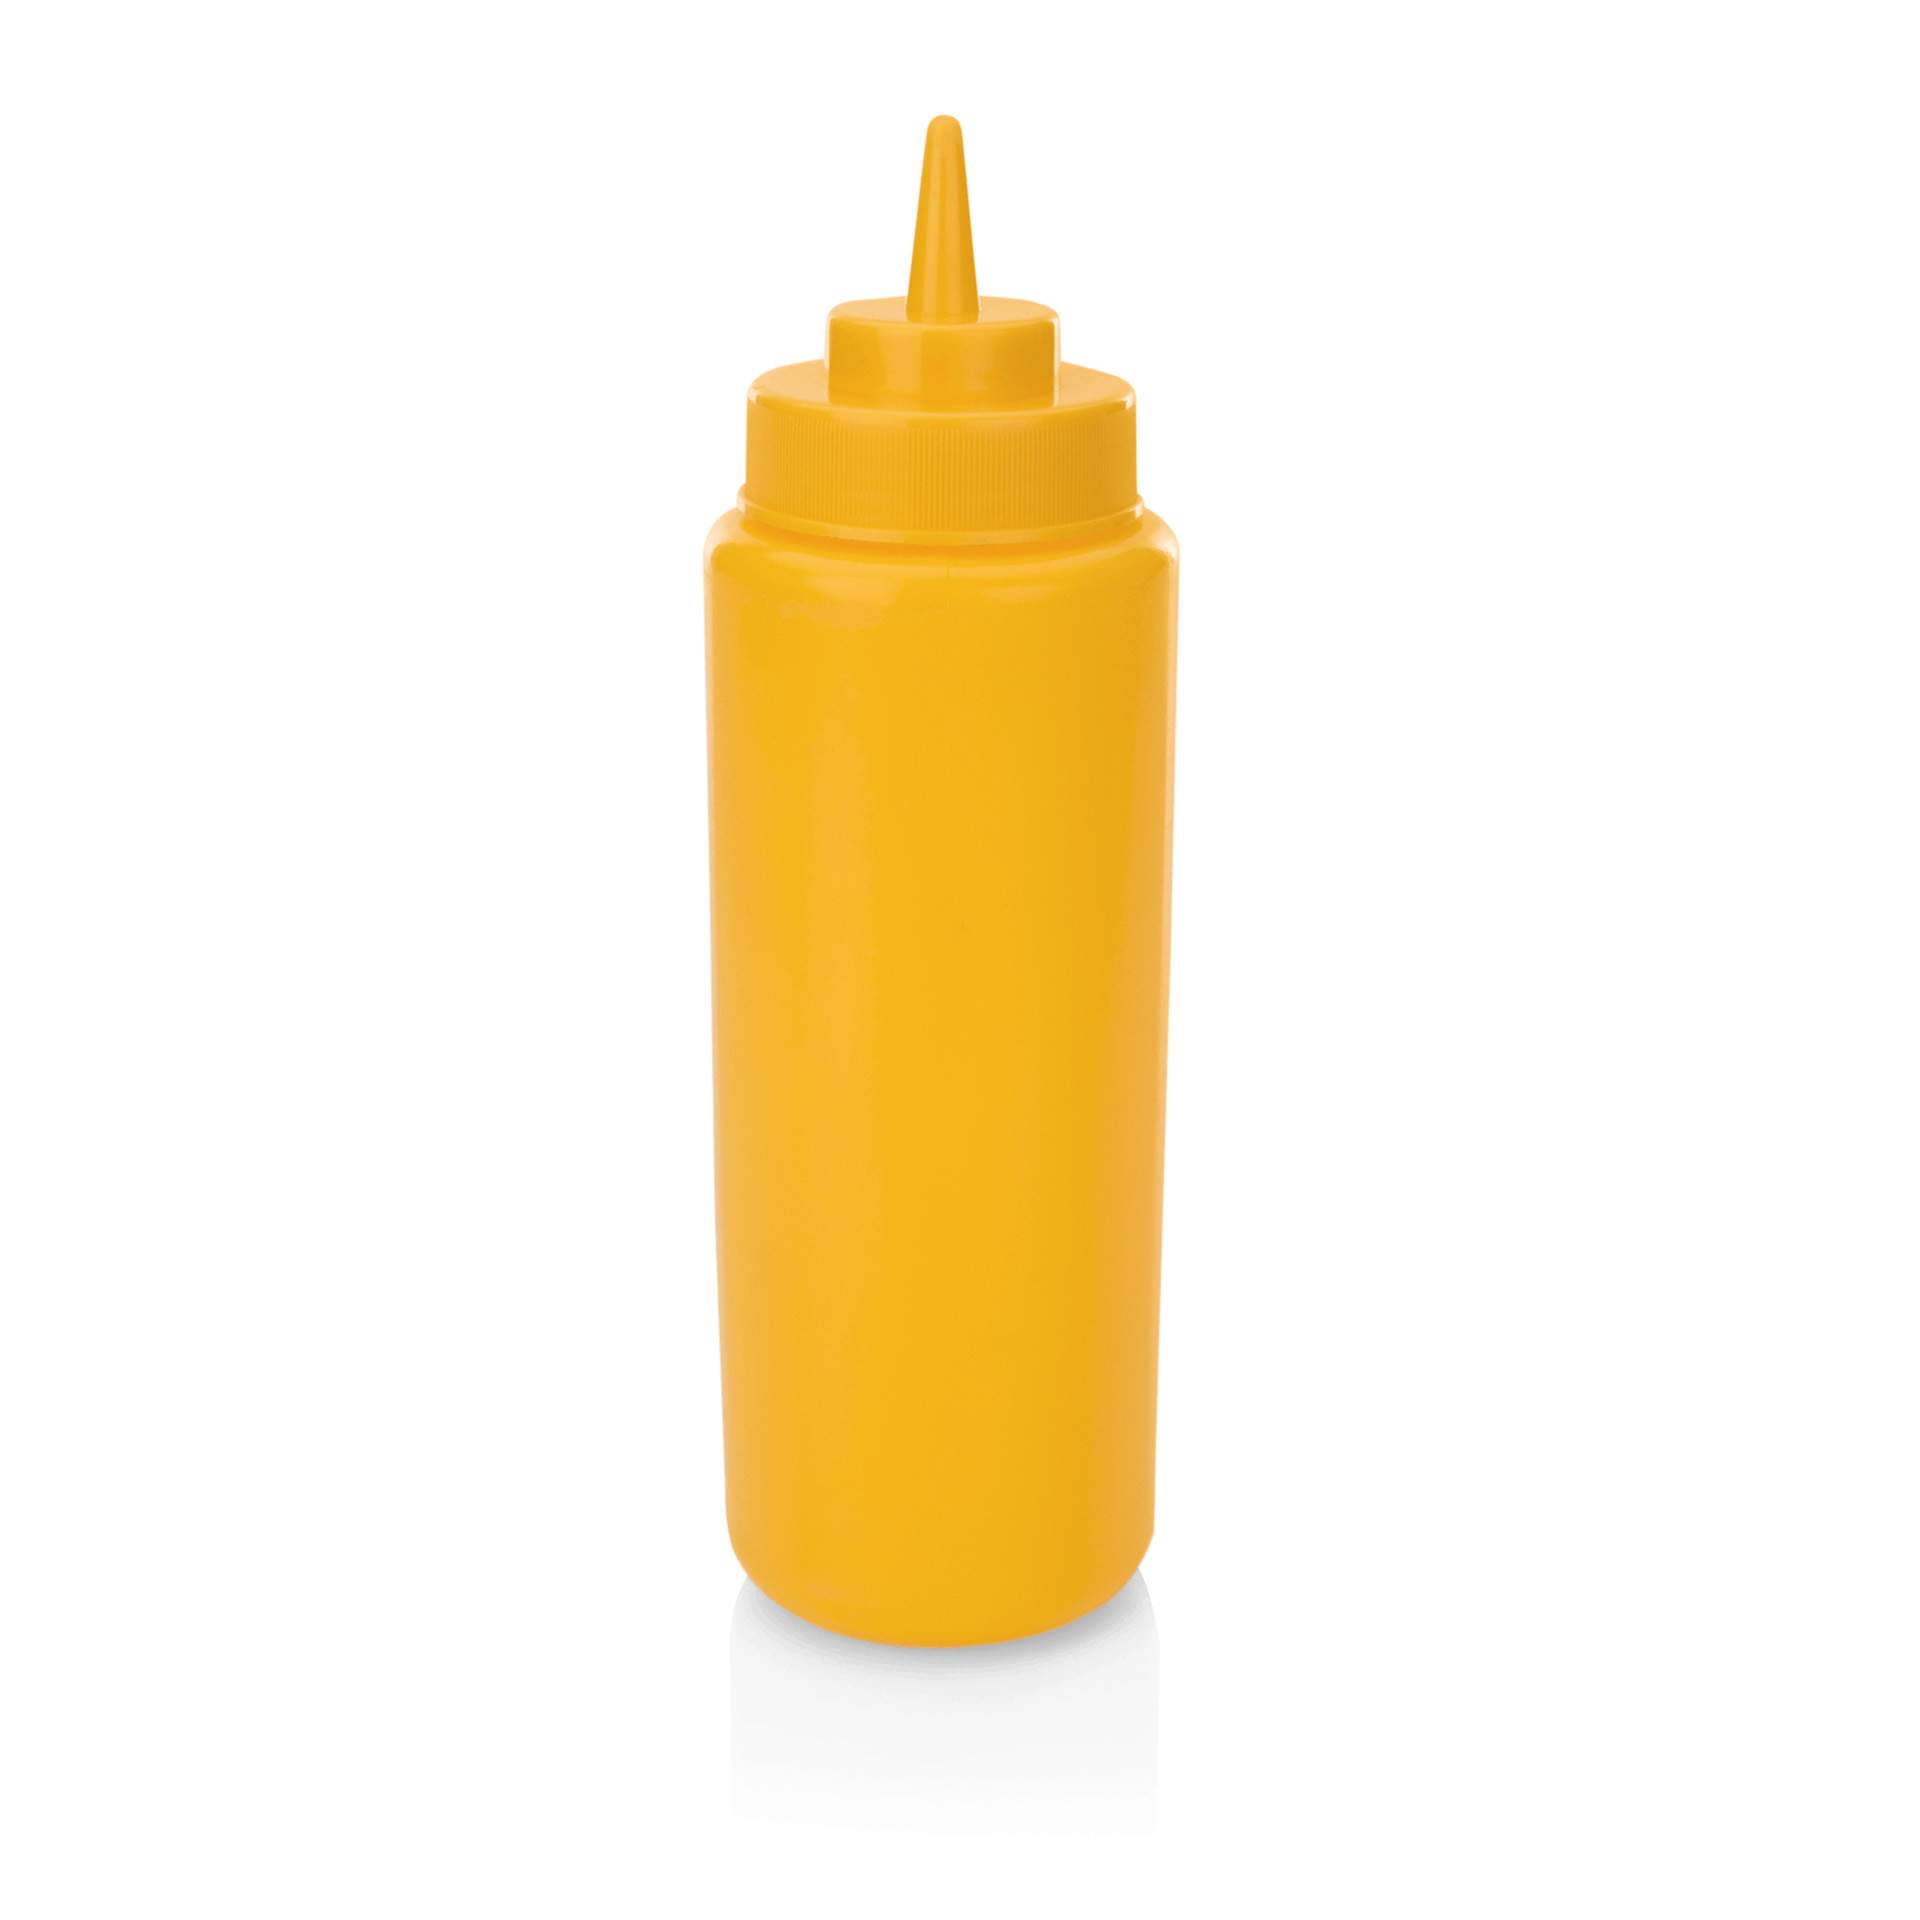 Quetschflasche - mit Schraubdeckel - gelb - Abm. 26 cm - Ø 8,0 cm - Inhalt 0,95 l - Polyethylen - 3736001-A